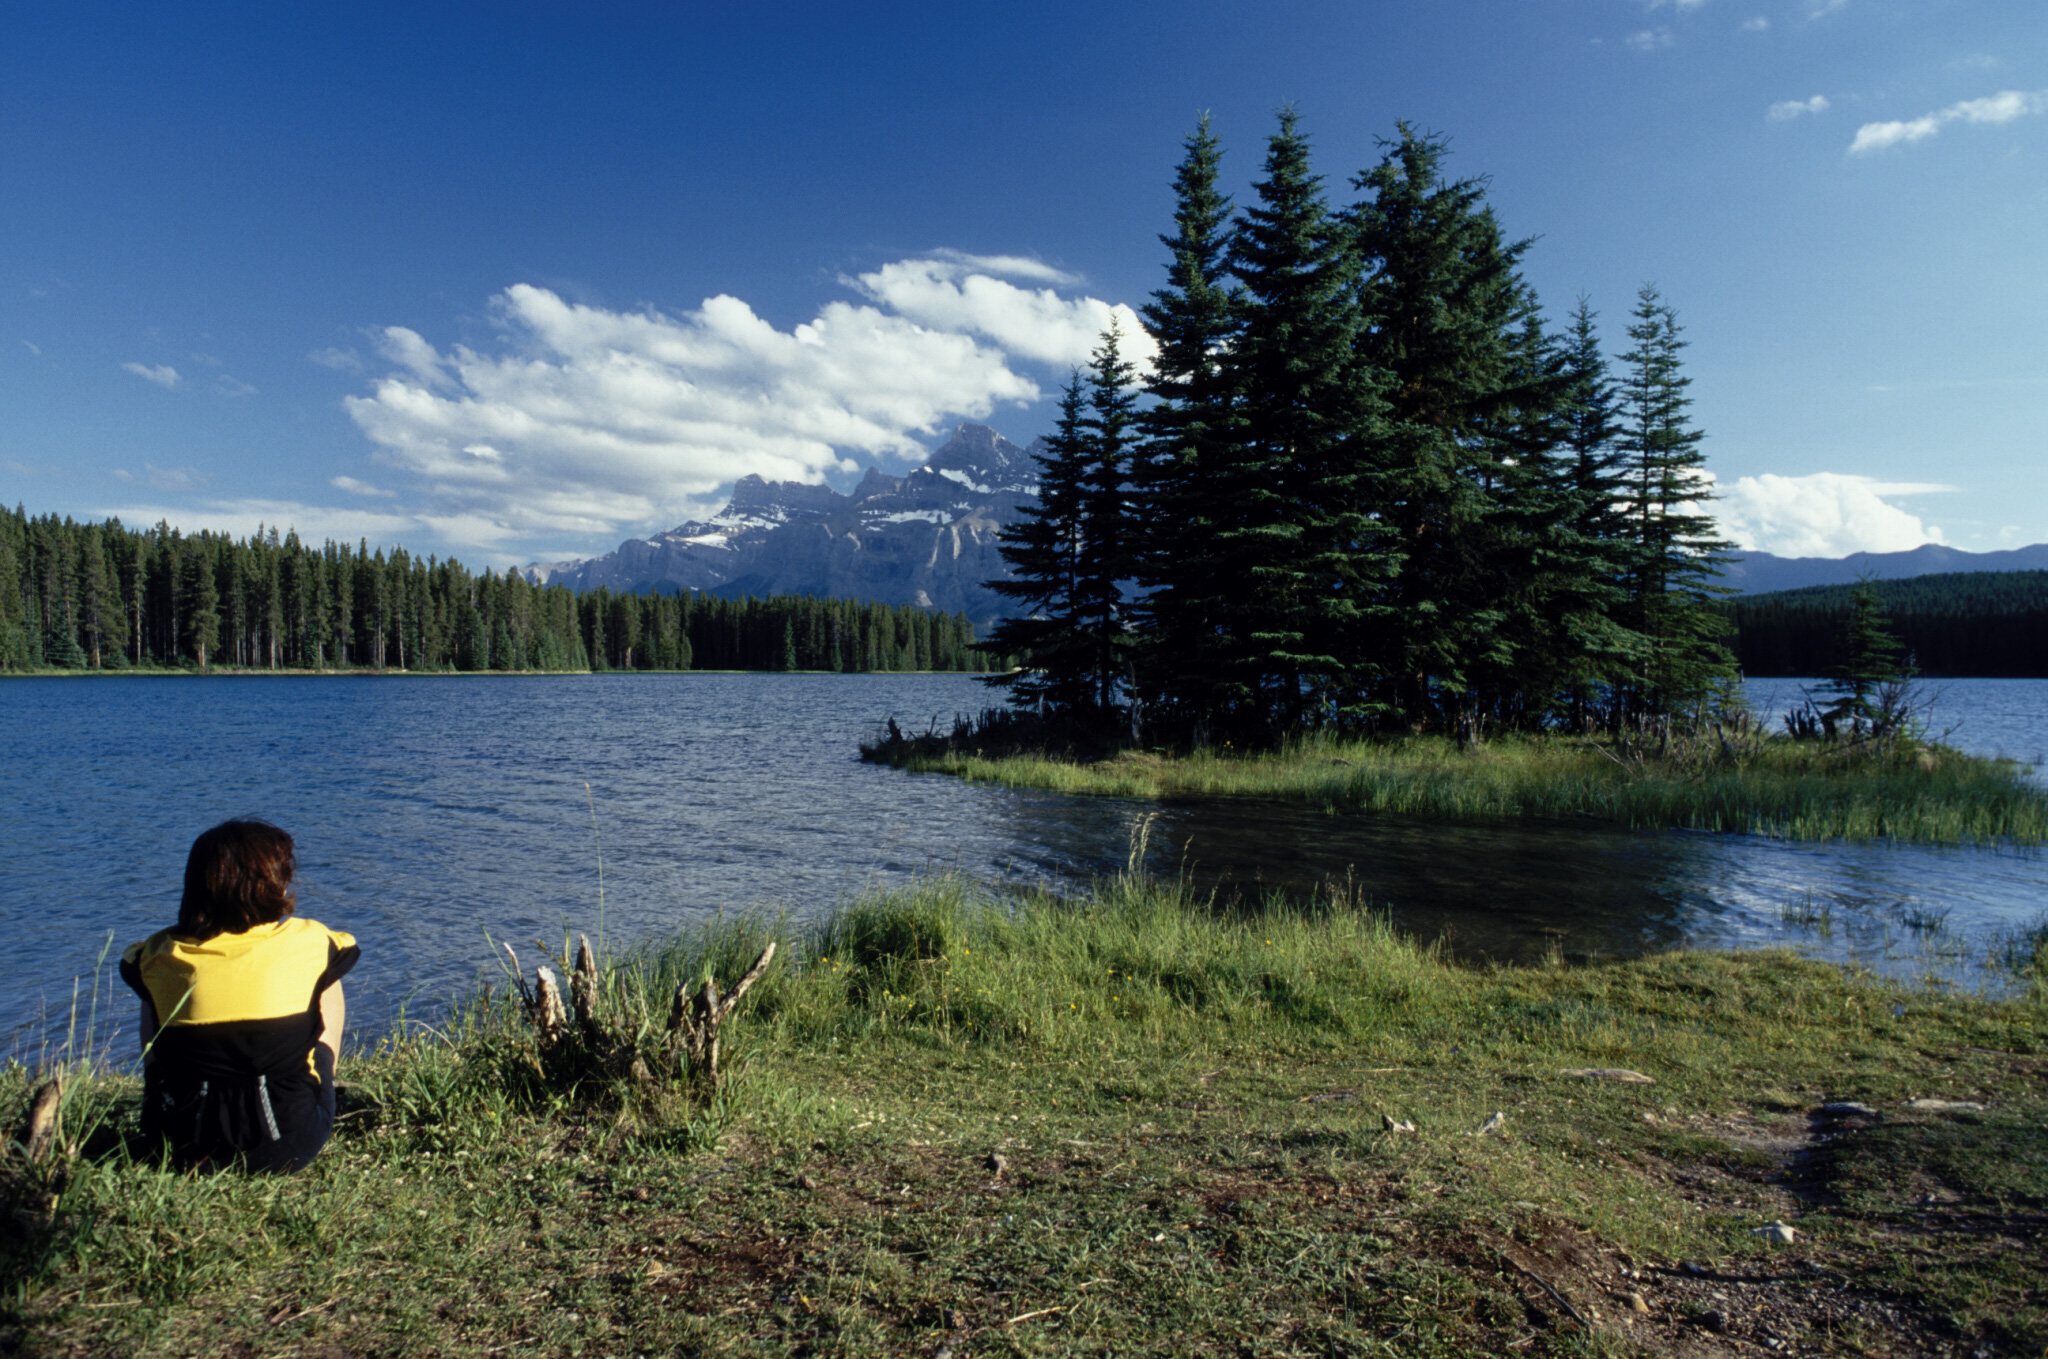 La imagen es un paisaje en el que se distingue un lago y unos árboles que están en medio del lago formando una isla. En la orilla hay una figura humana sentada.